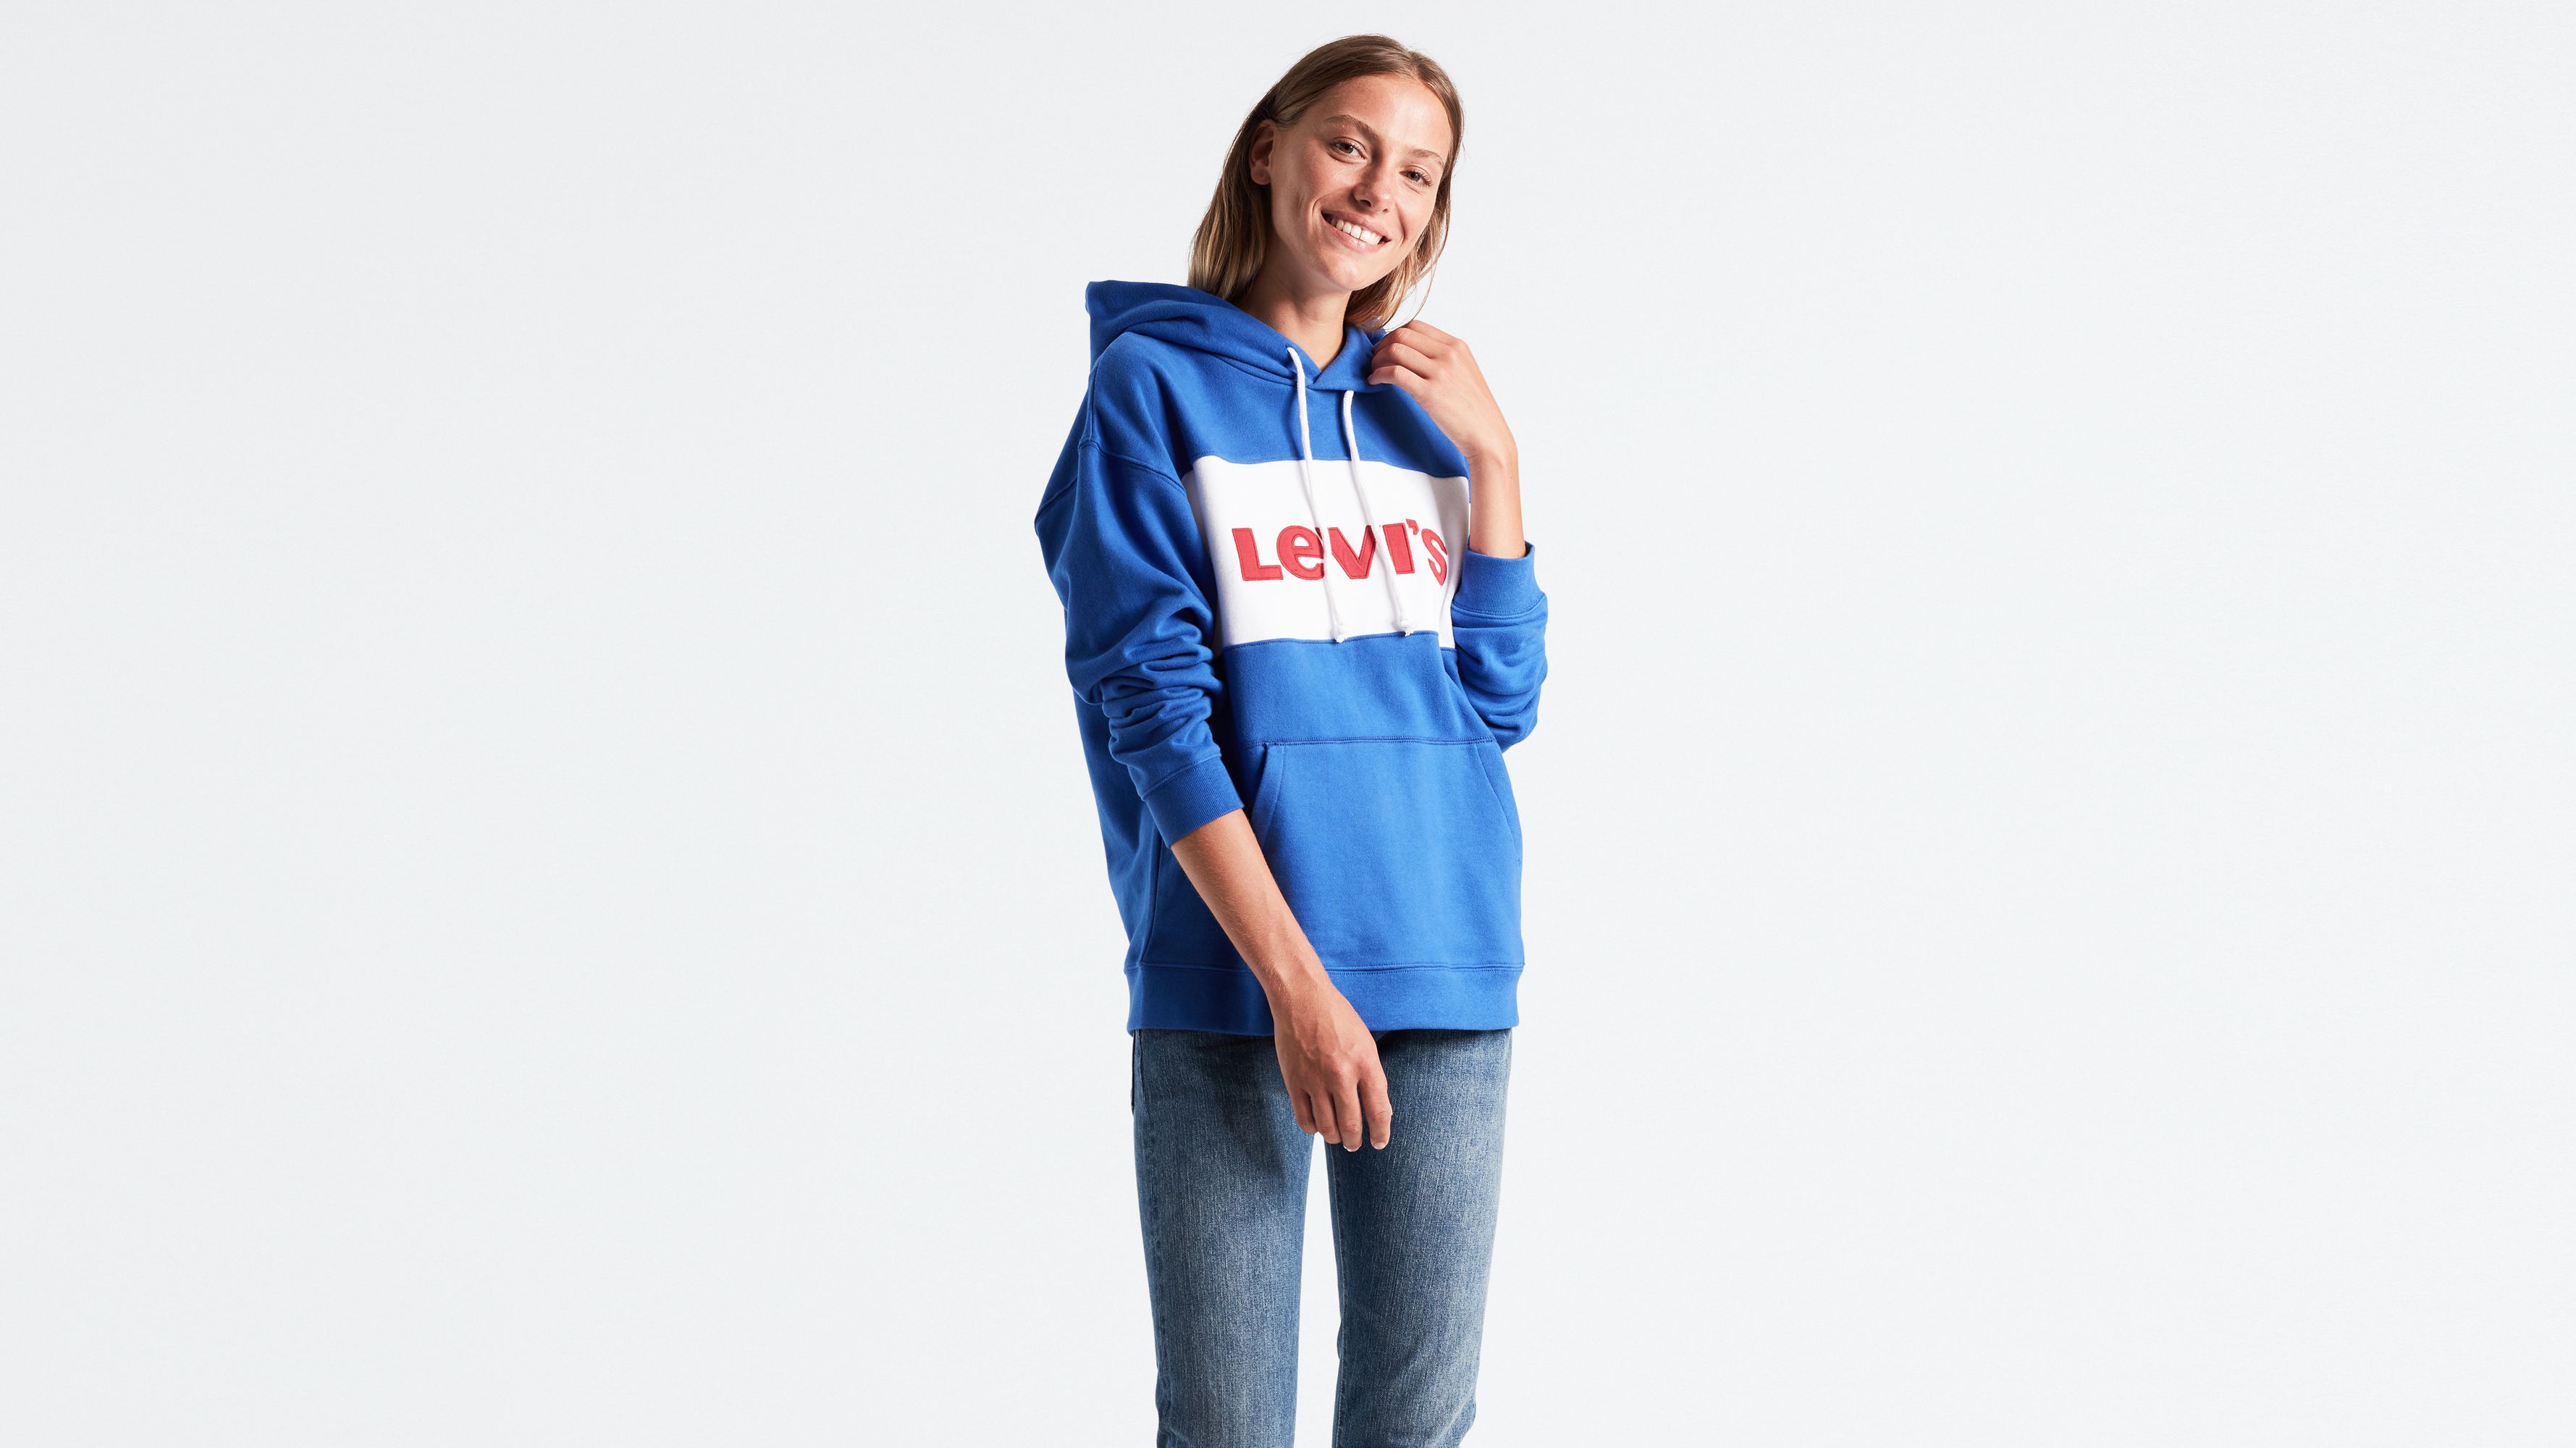 levis sportswear hoodie